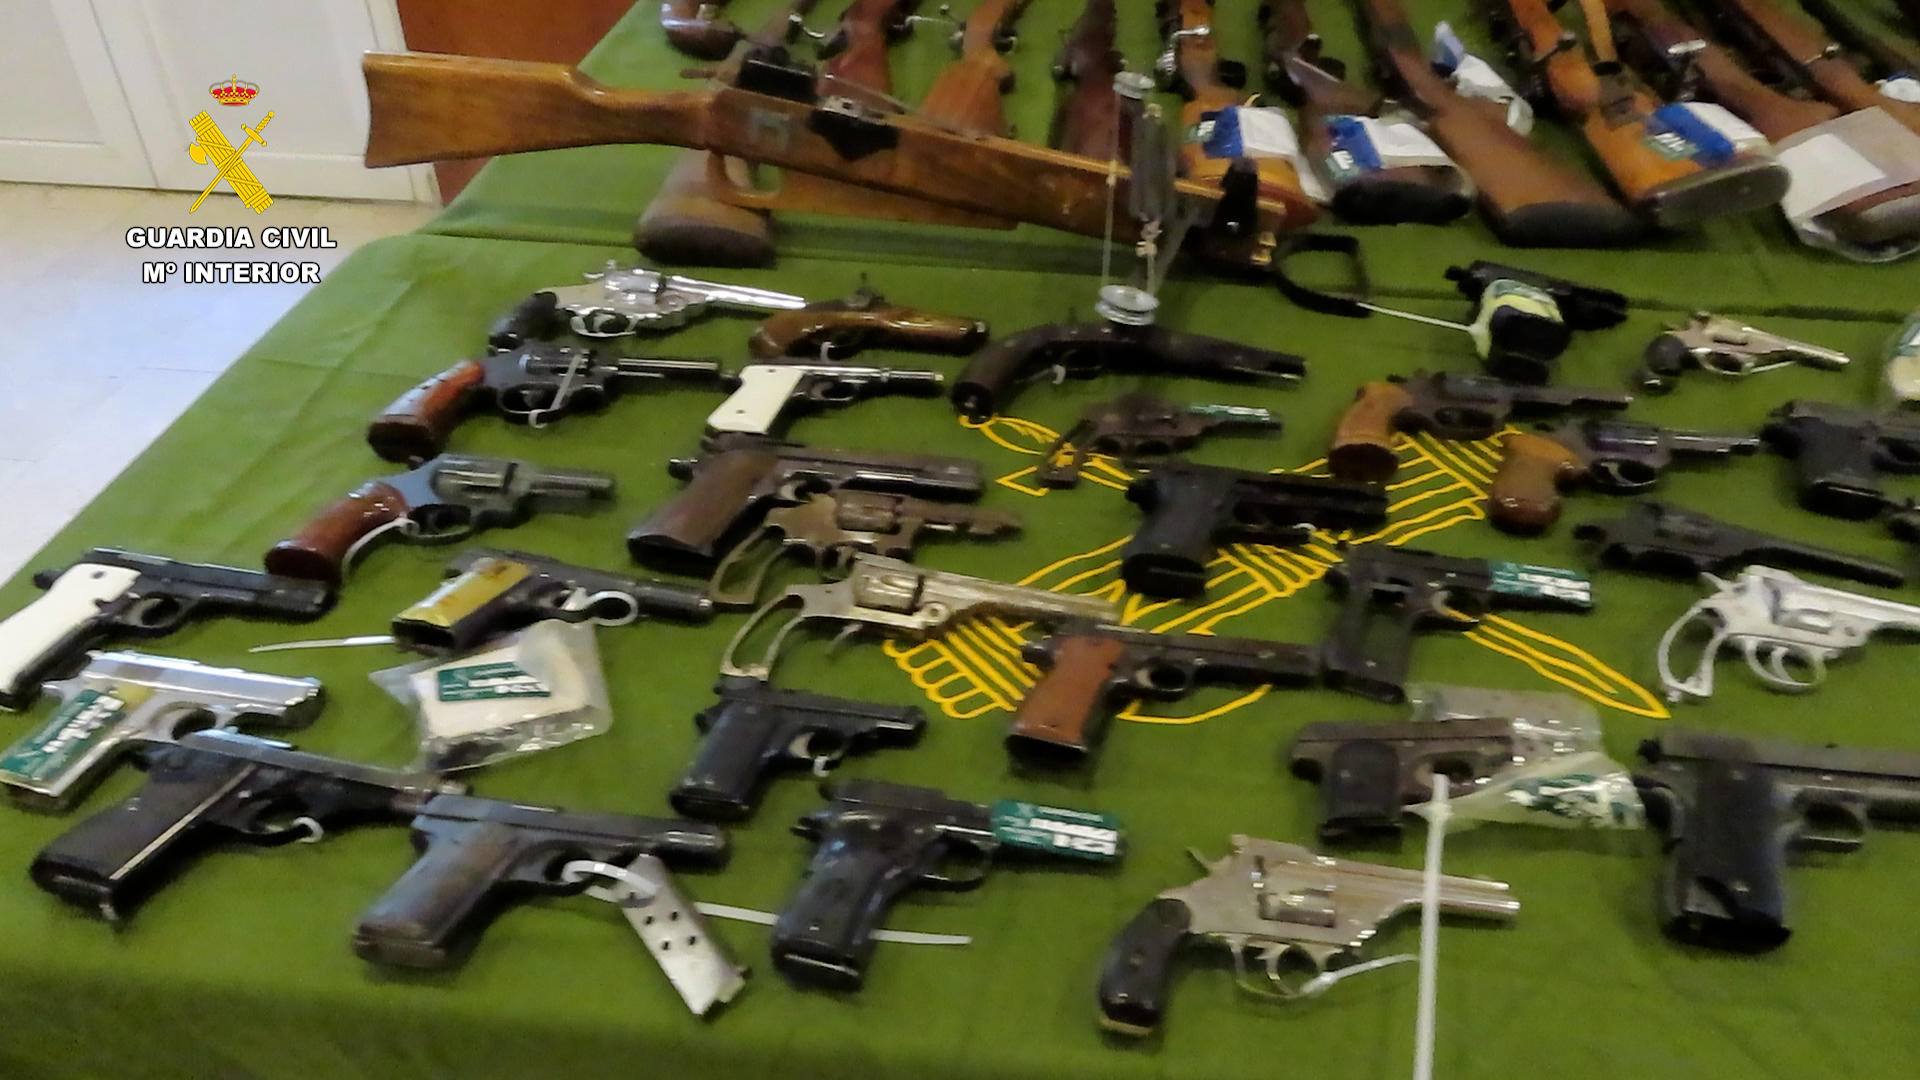 La Guardia Civil ha desmantelado en Alicante un taller clandestino de armas ilegales. En la imagen, armas intervenidas en la operación. EFE/Guardia Civil